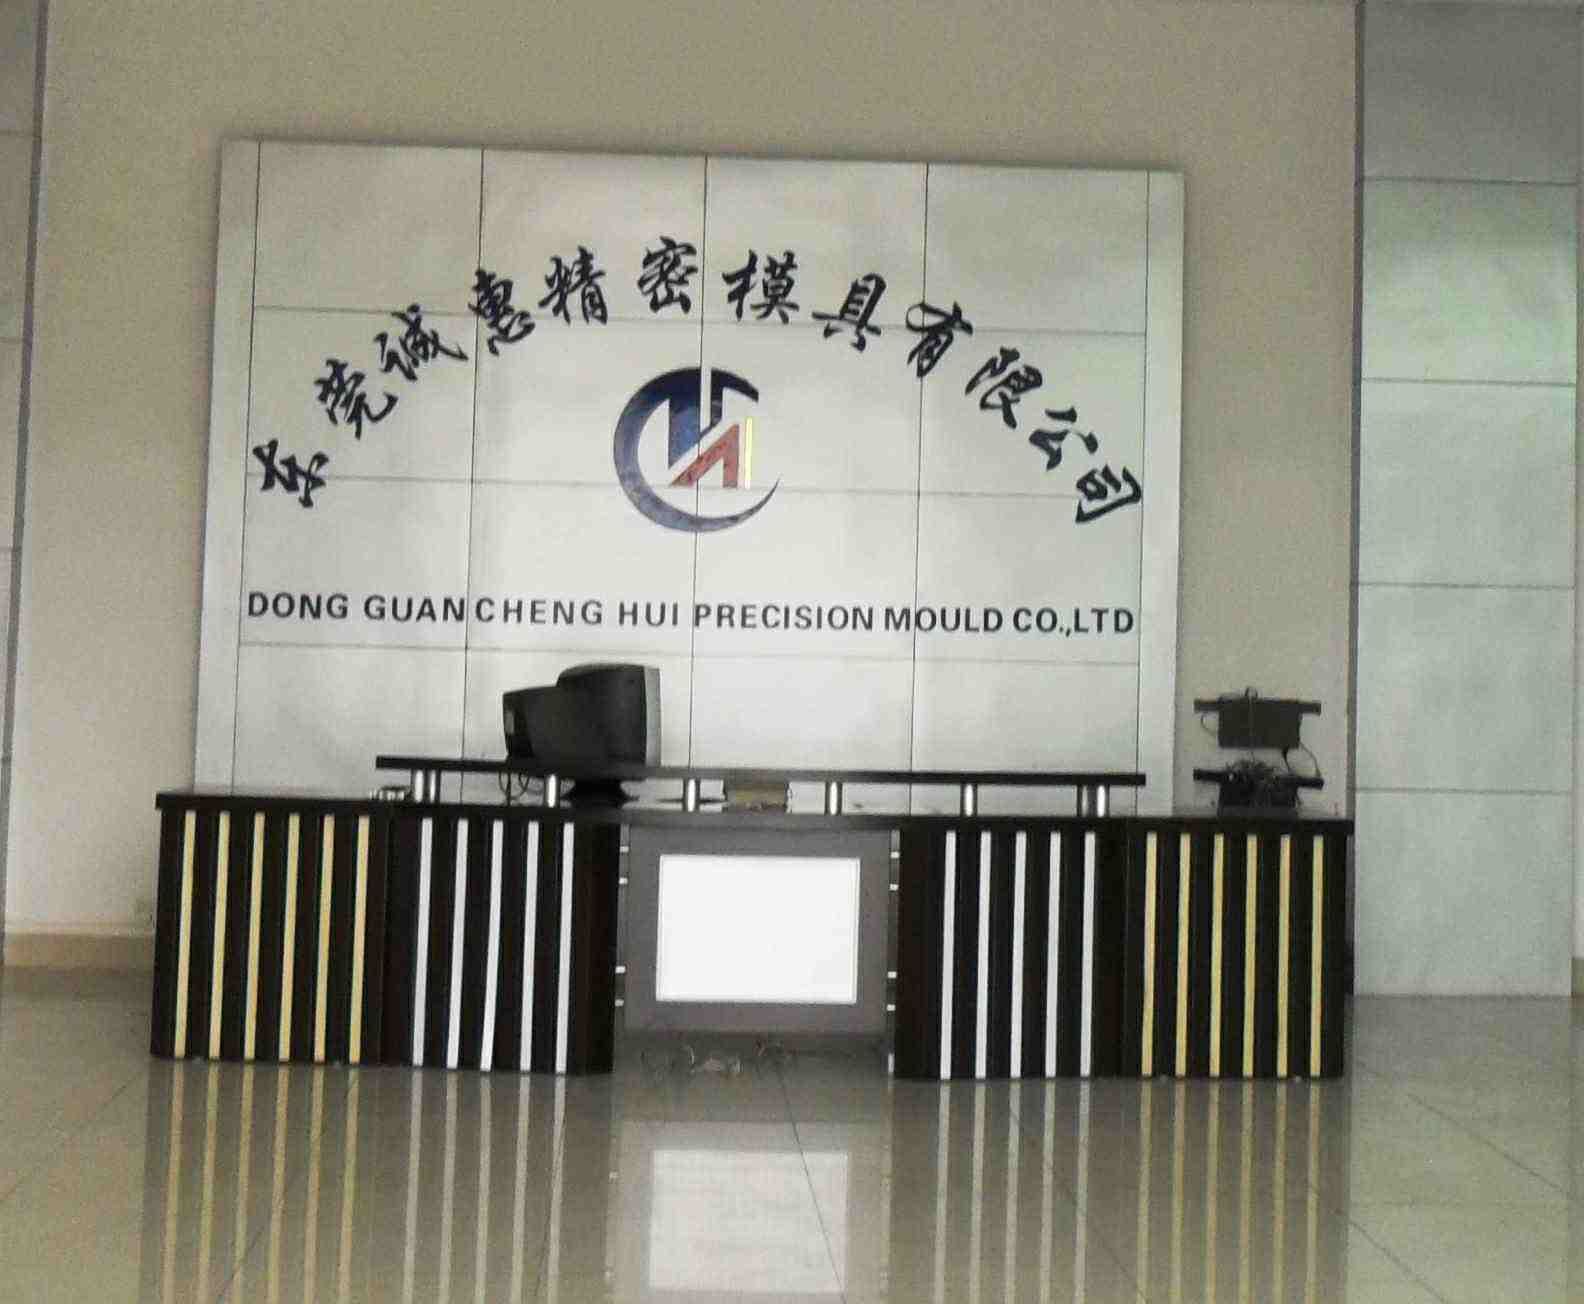 Dongguan Chenghui Precision Mould Co., Ltd. logo